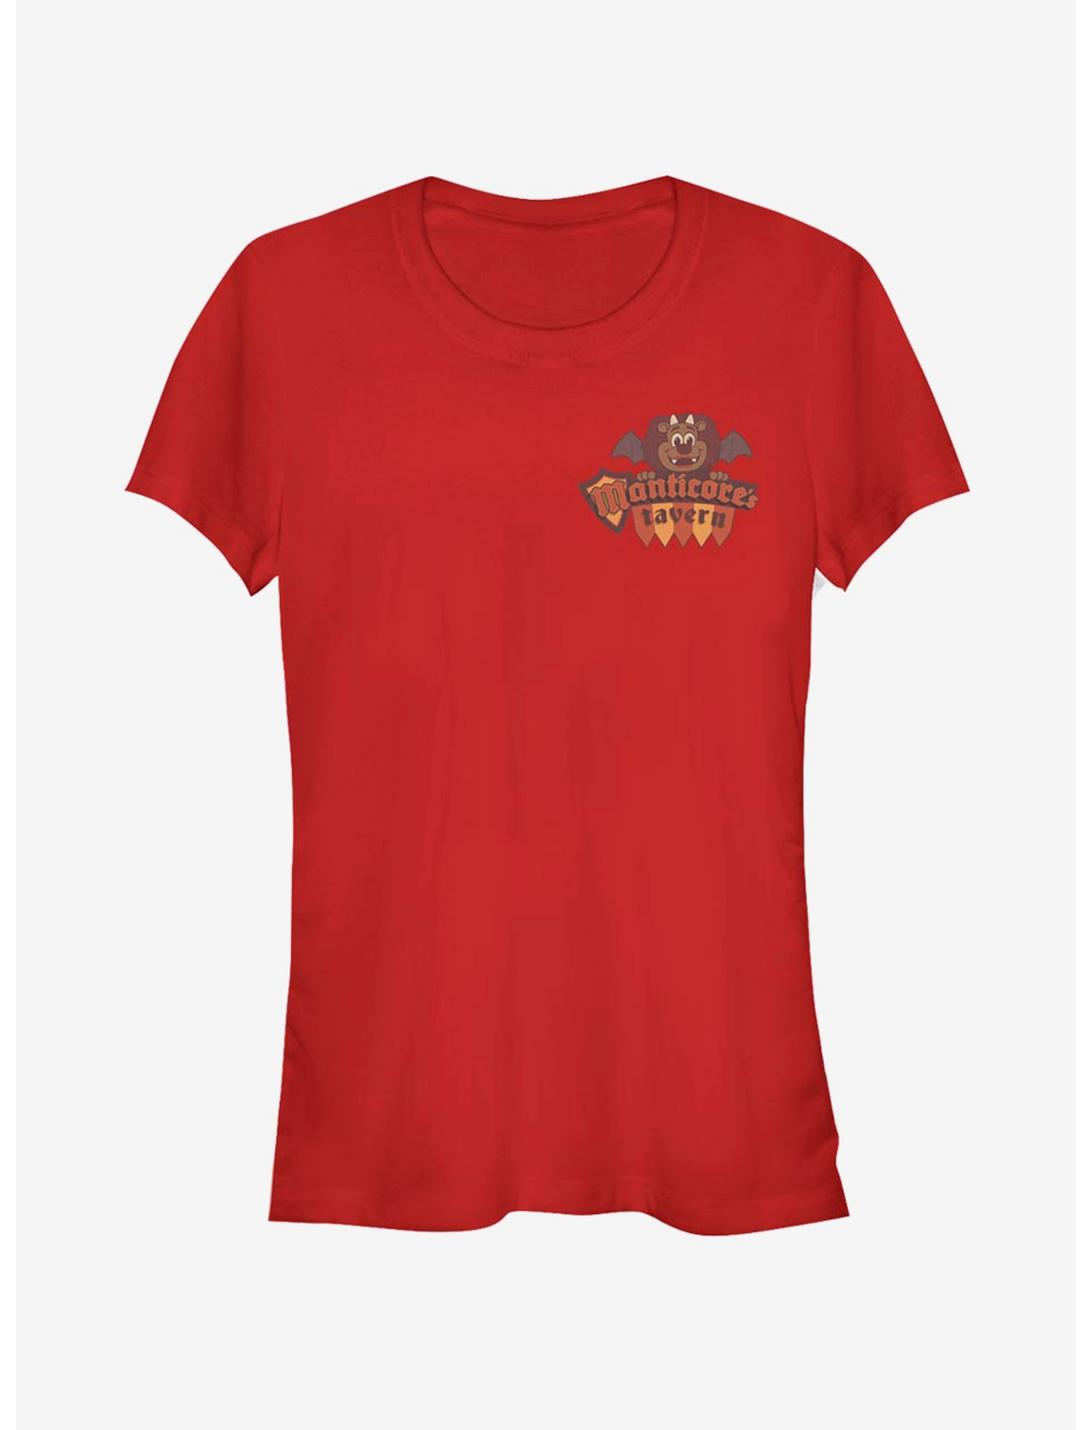 Disney Pixar Onward Tavern Girls T-Shirt, RED, hi-res